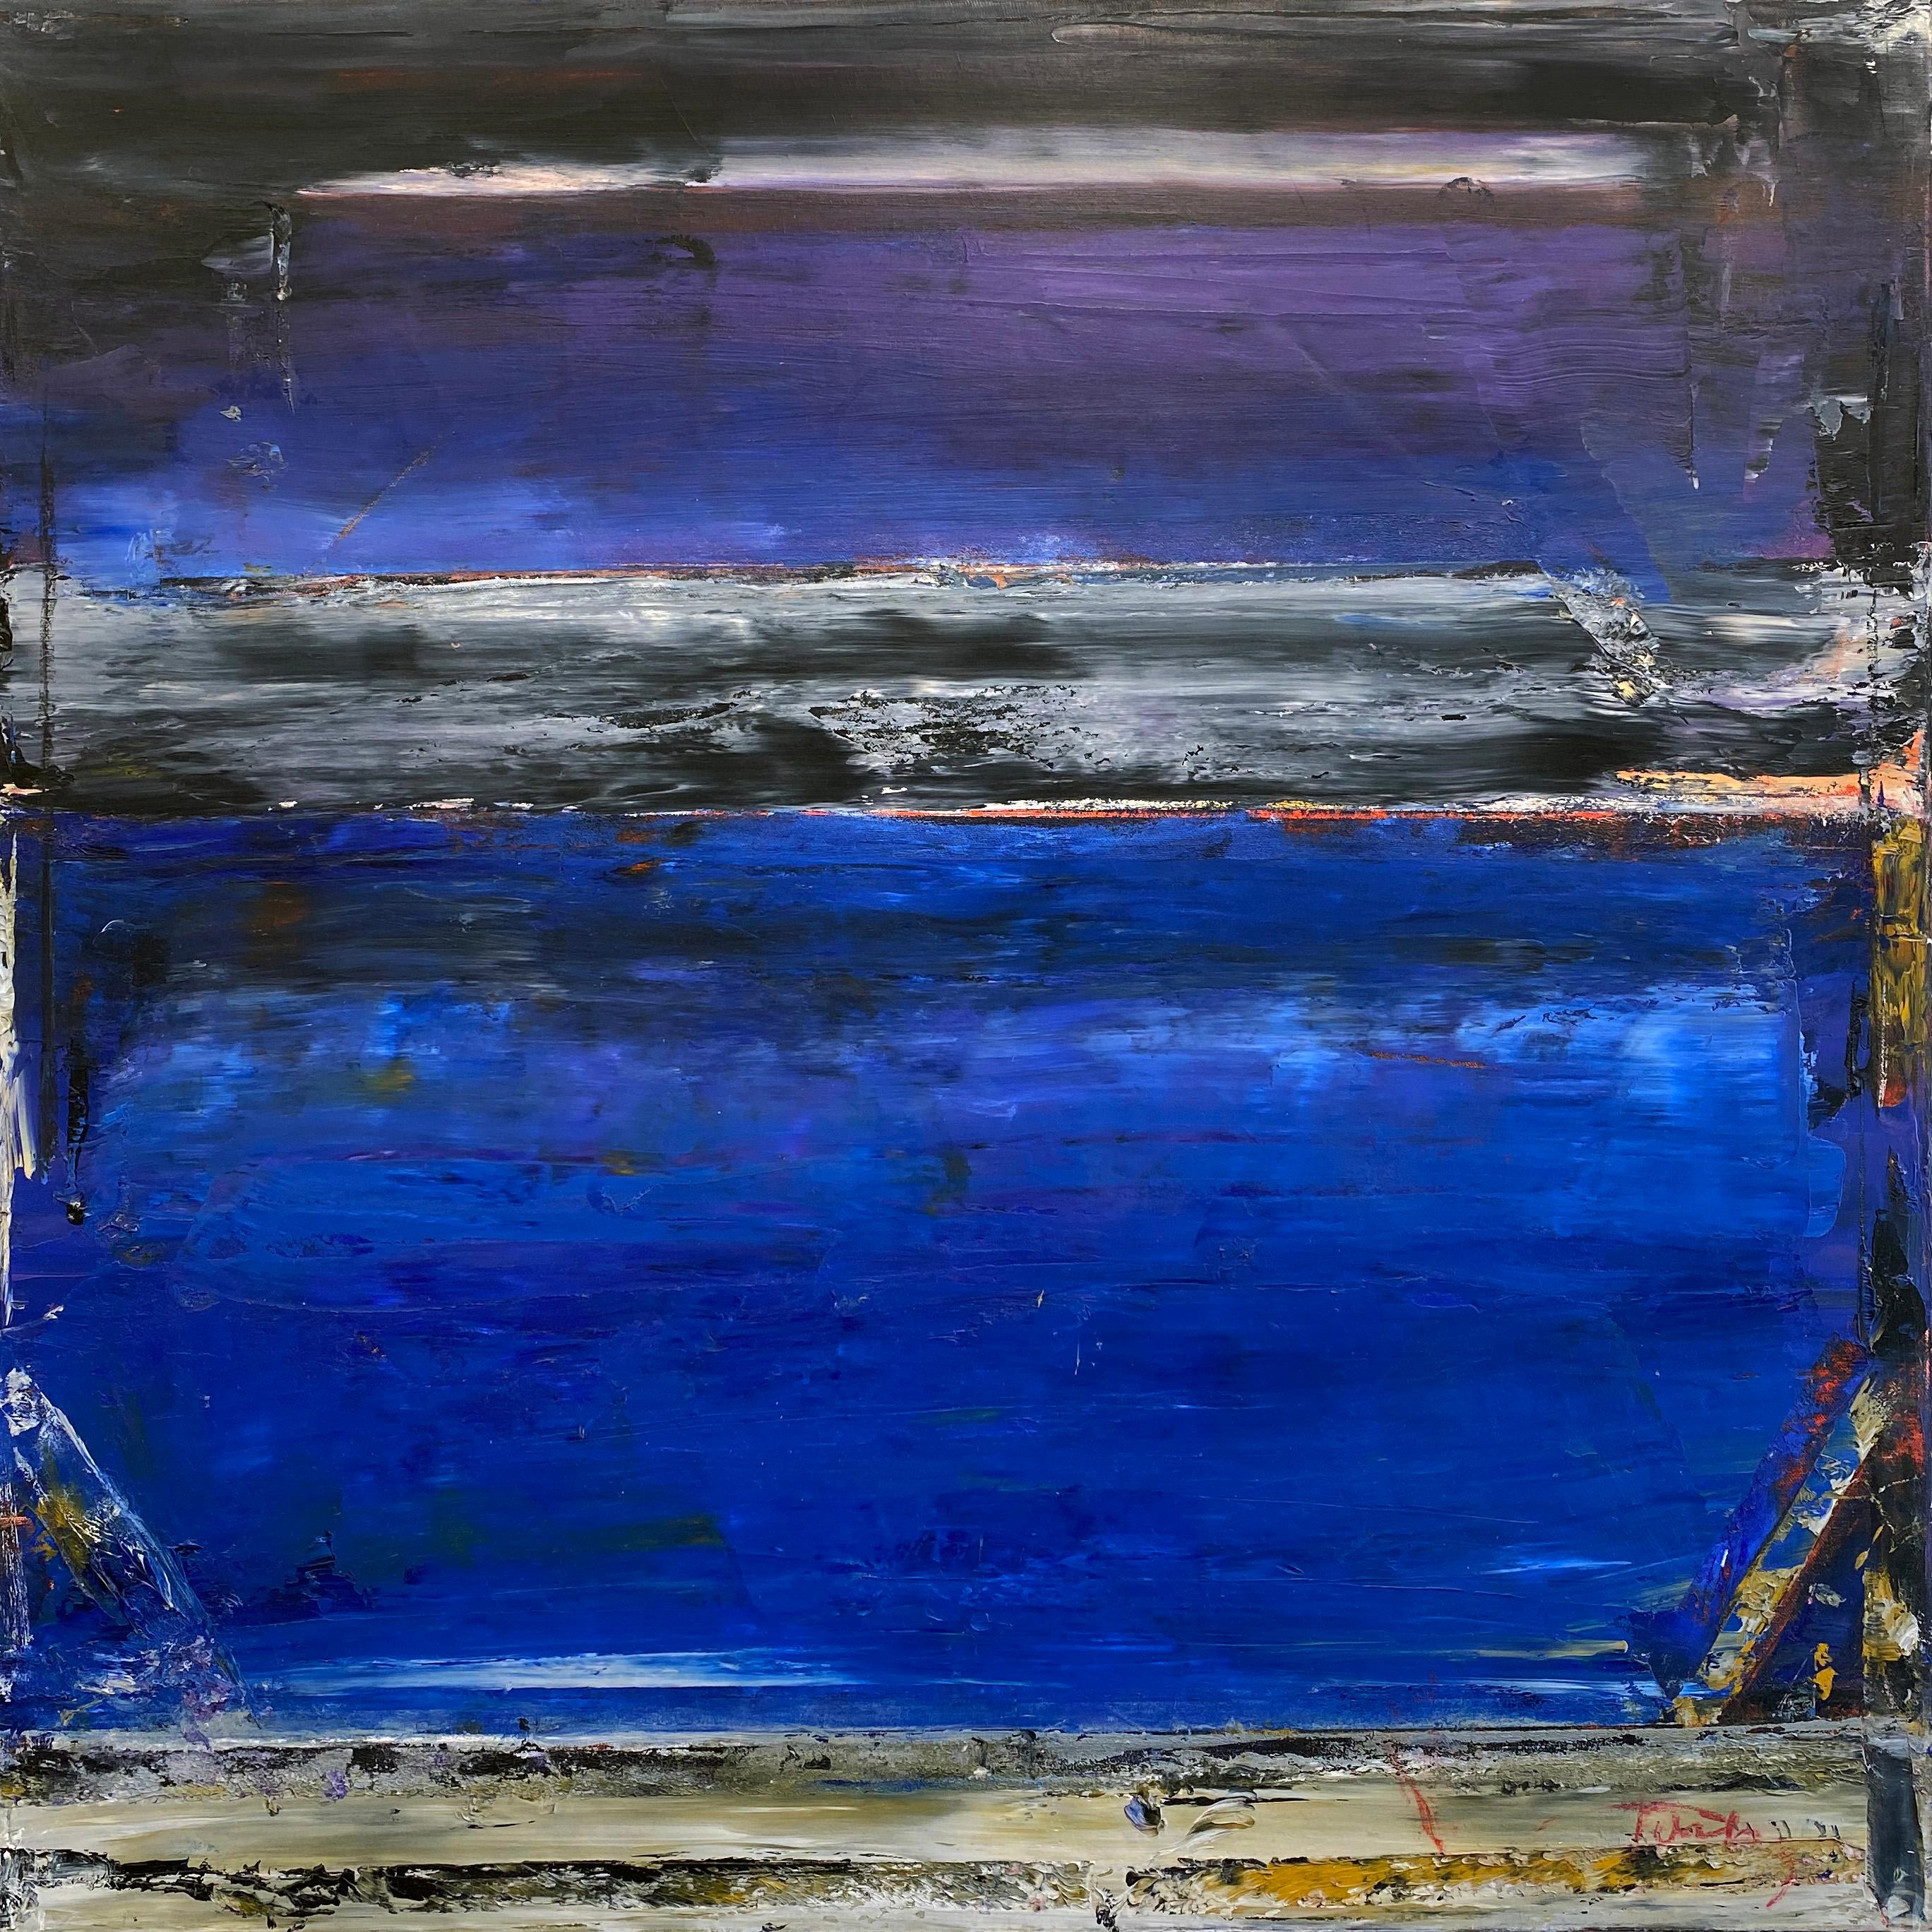 "Tauben 15" von Linda Touby, um 2010. Öl und Wachs auf Leinwand, 36 x 36 Zoll. Dieses Gemälde zeigt strukturierte Streifen aus dunklen Pigmenten wie Violett, Blau, Schwarz, Weiß und Rot. 

Dieses wunderschöne Gemälde stammt aus Linda Toubys